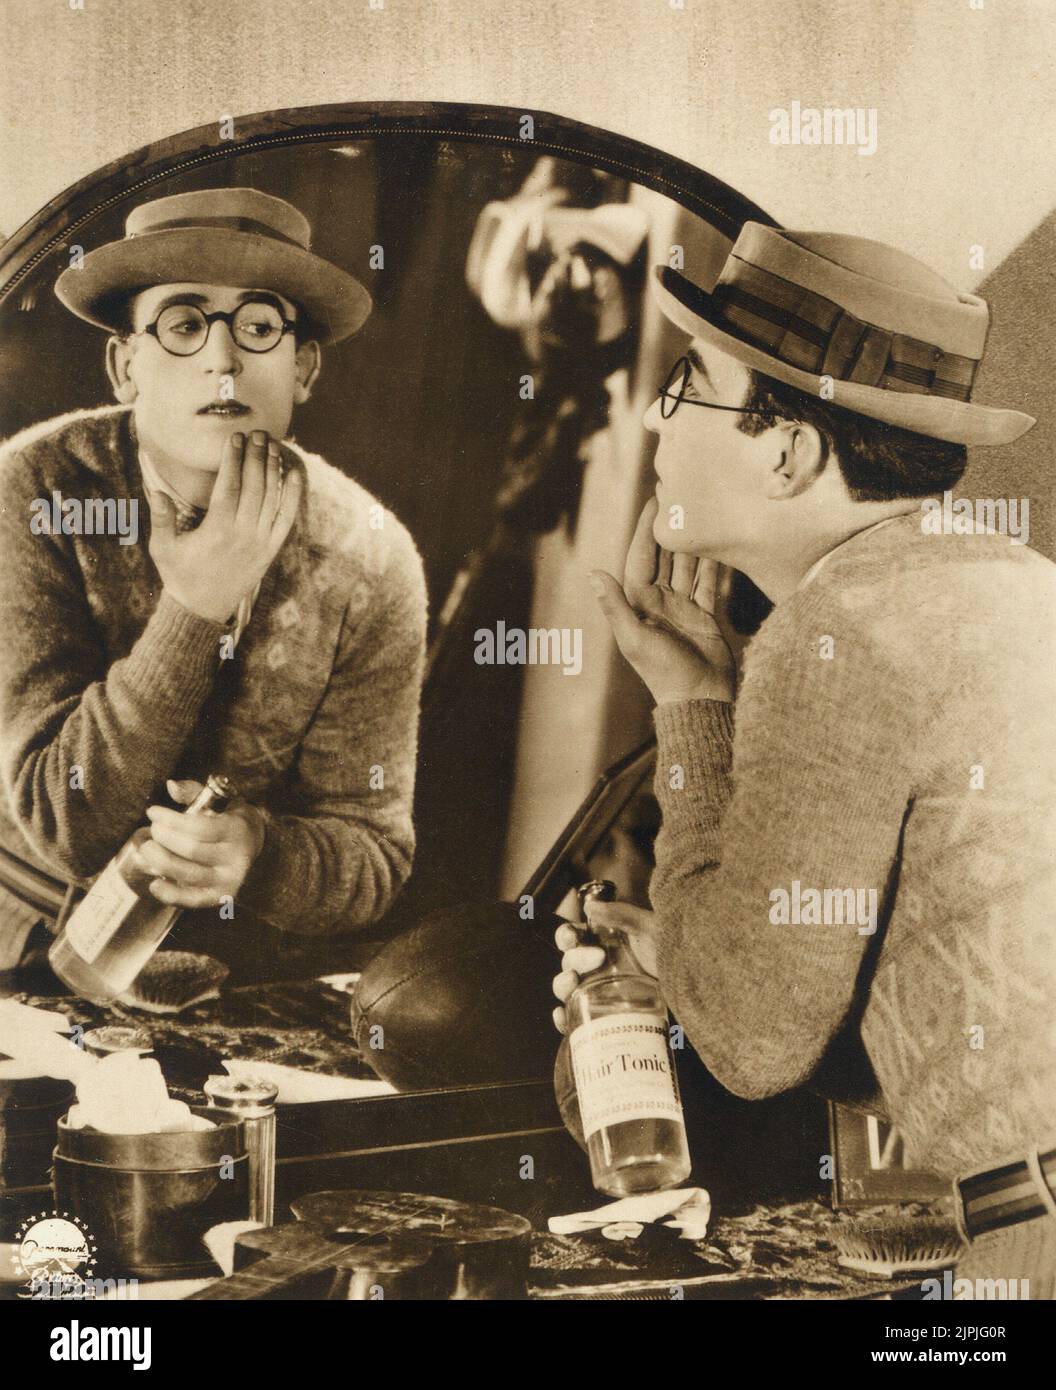 La película silenciosa actor americano HAROLD LLOYD ( 1893 - 1971 ) - CINE MUTO - comiche - tónico capilar - espejo - specchio - riflesso - reflejo - occhiali - gafas - sombrero - cappello --- Archivio GBB Foto de stock